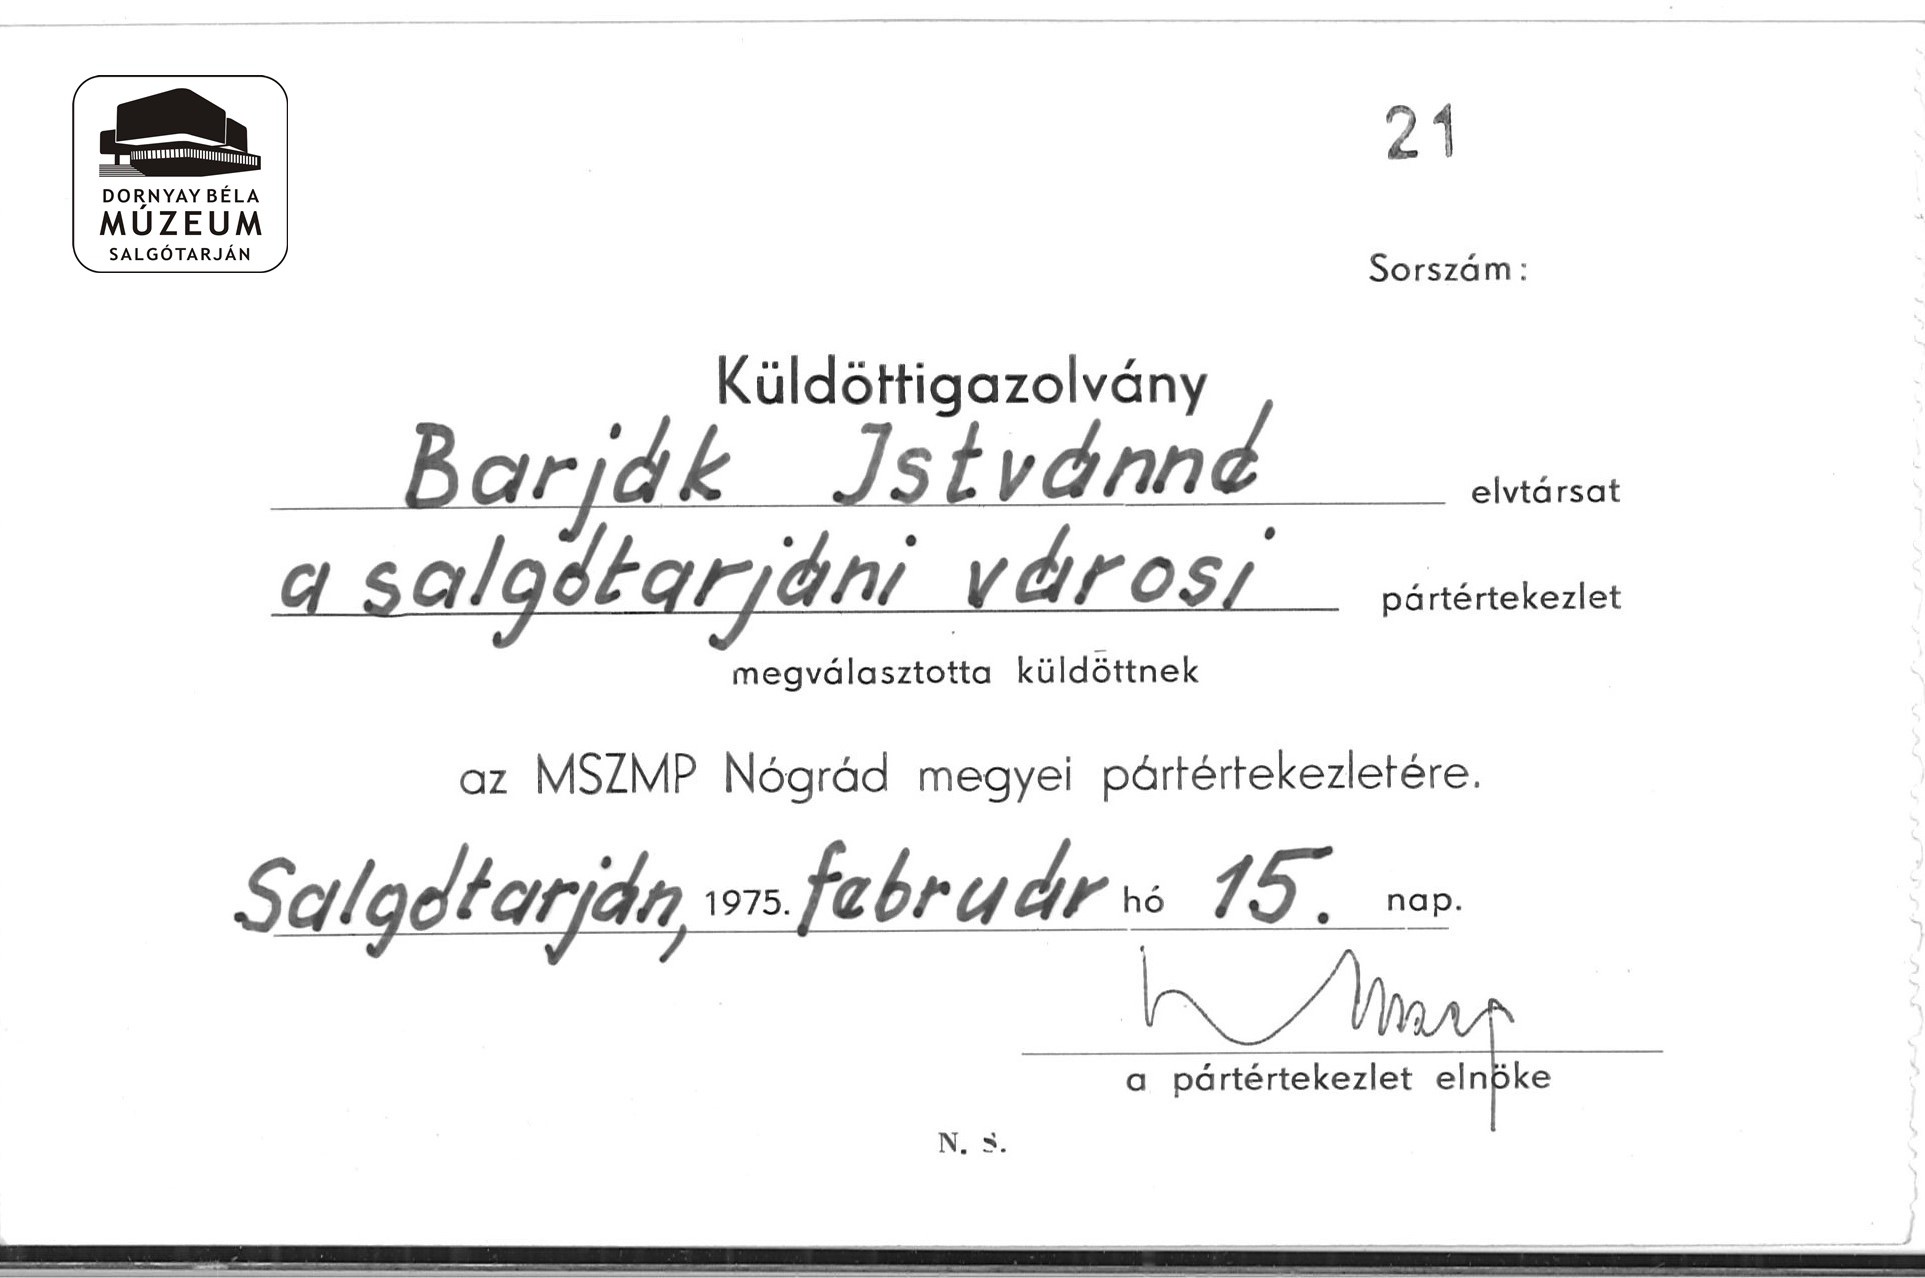 Barják Istvánné küldöttigazolványa az MSZMP Nógrád megyei értekezletére (Dornyay Béla Múzeum, Salgótarján CC BY-NC-SA)